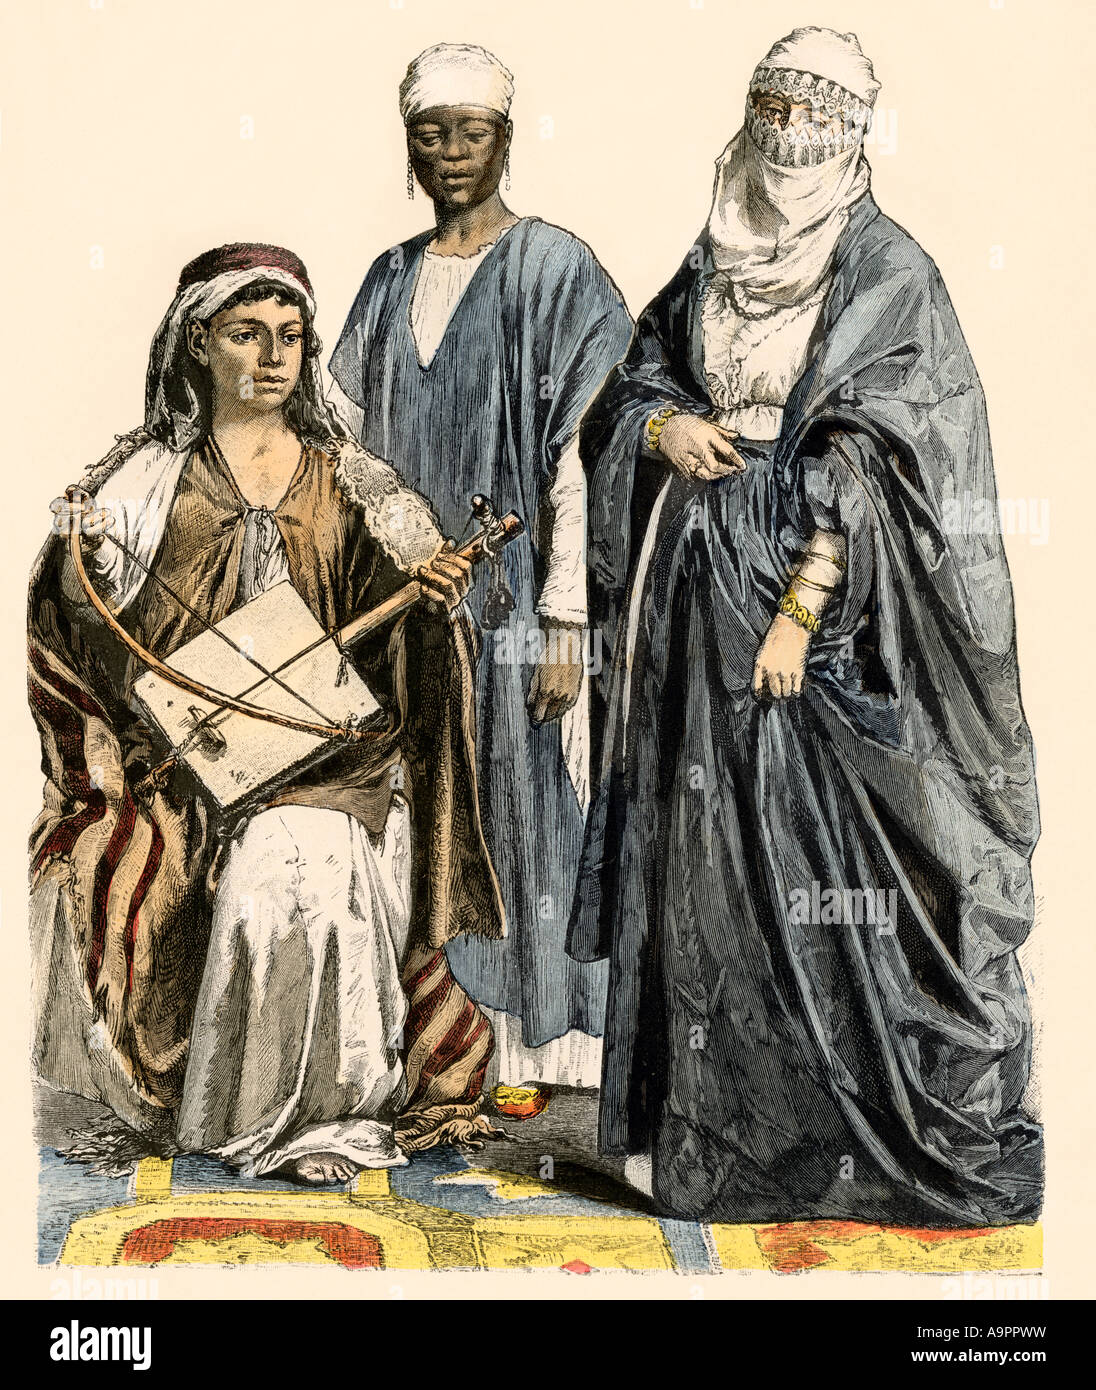 Bedouin Musiker, afrikanische Sklaven und eine muslimische Frau in der Straße kleid Kairo Ägypten 1800. Hand-farbig drucken Stockfoto